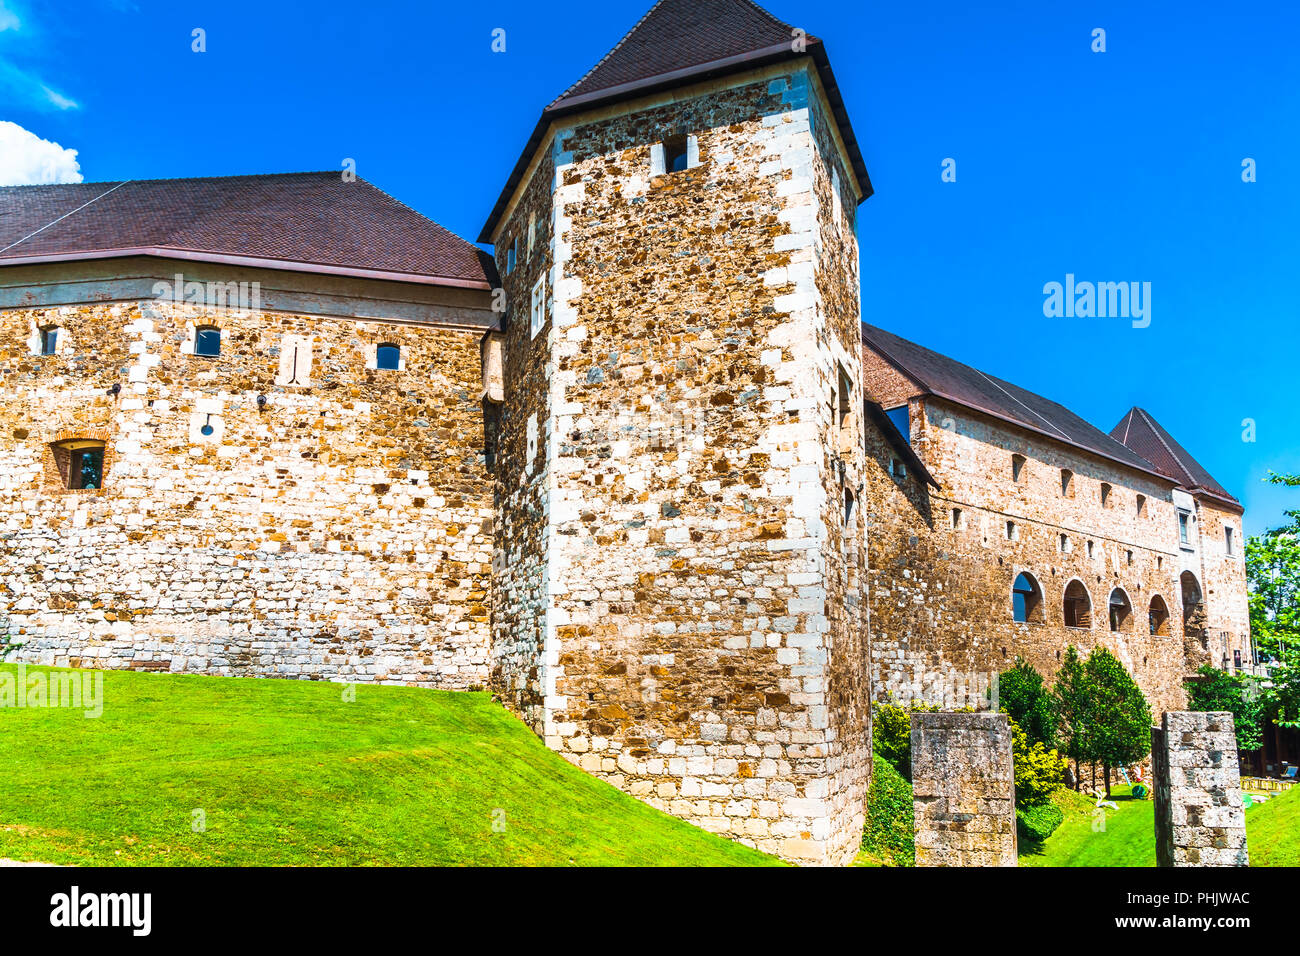 Mauern der mittelalterlichen Burg von Ljubljana - Slowenien Stockfoto